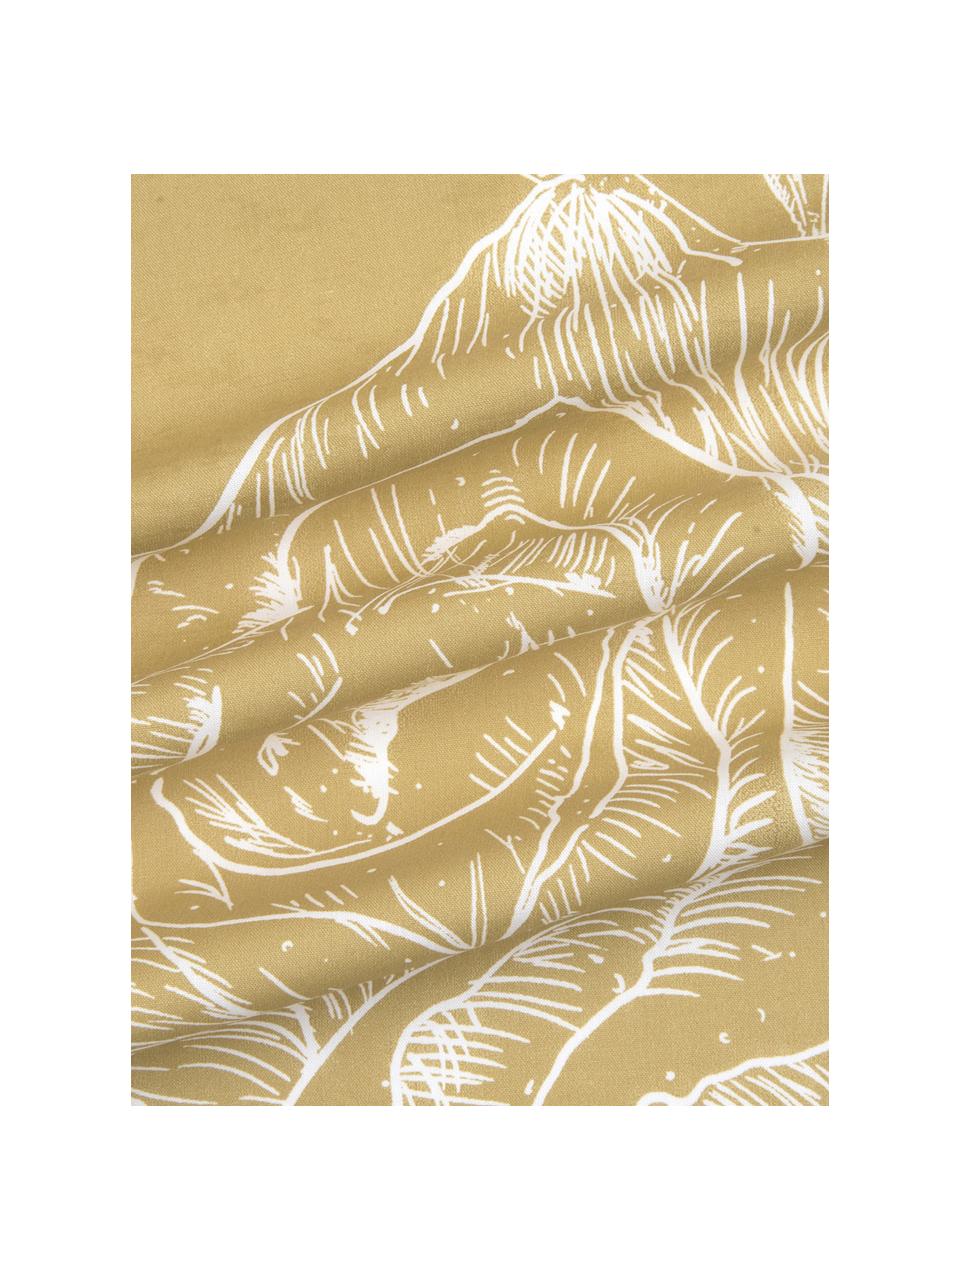 Baumwollperkal-Bettwäsche Keno mit Blumenprint, Webart: Perkal Fadendichte 180 TC, Senfgelb, Weiß, 200 x 200 cm + 2 Kissen 80 x 80 cm